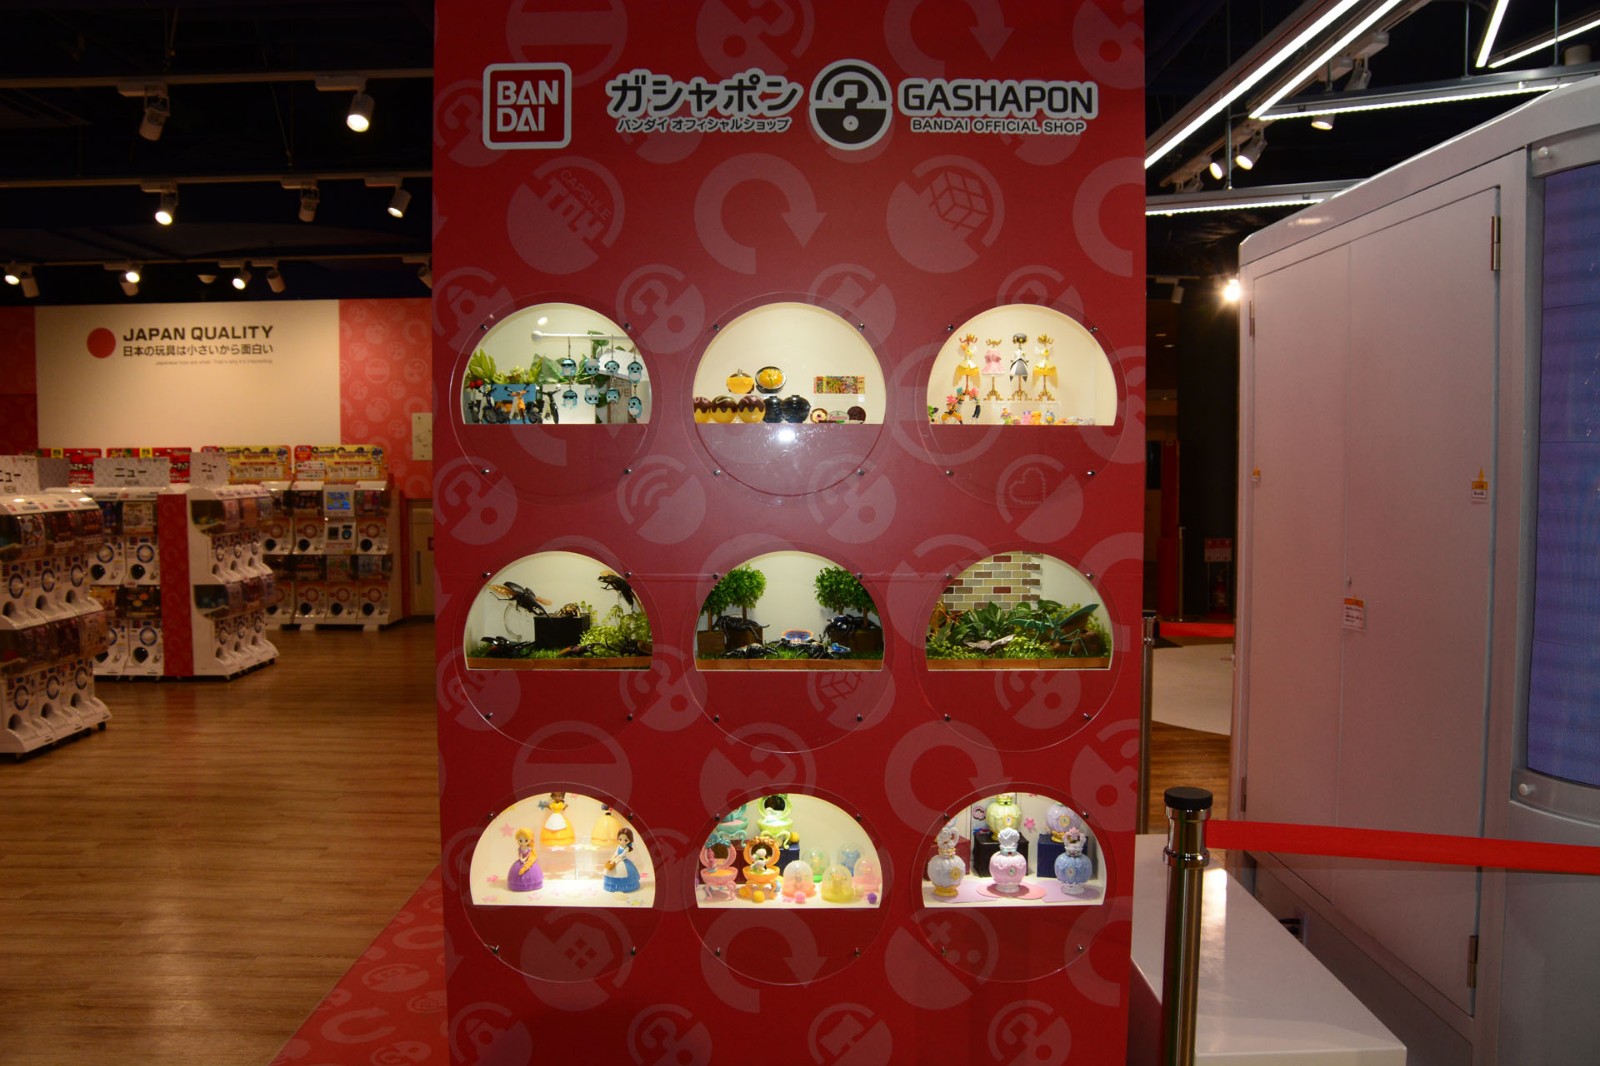 万代日本最大扭蛋机店探店 2000+扭蛋机榨干玩家钱包